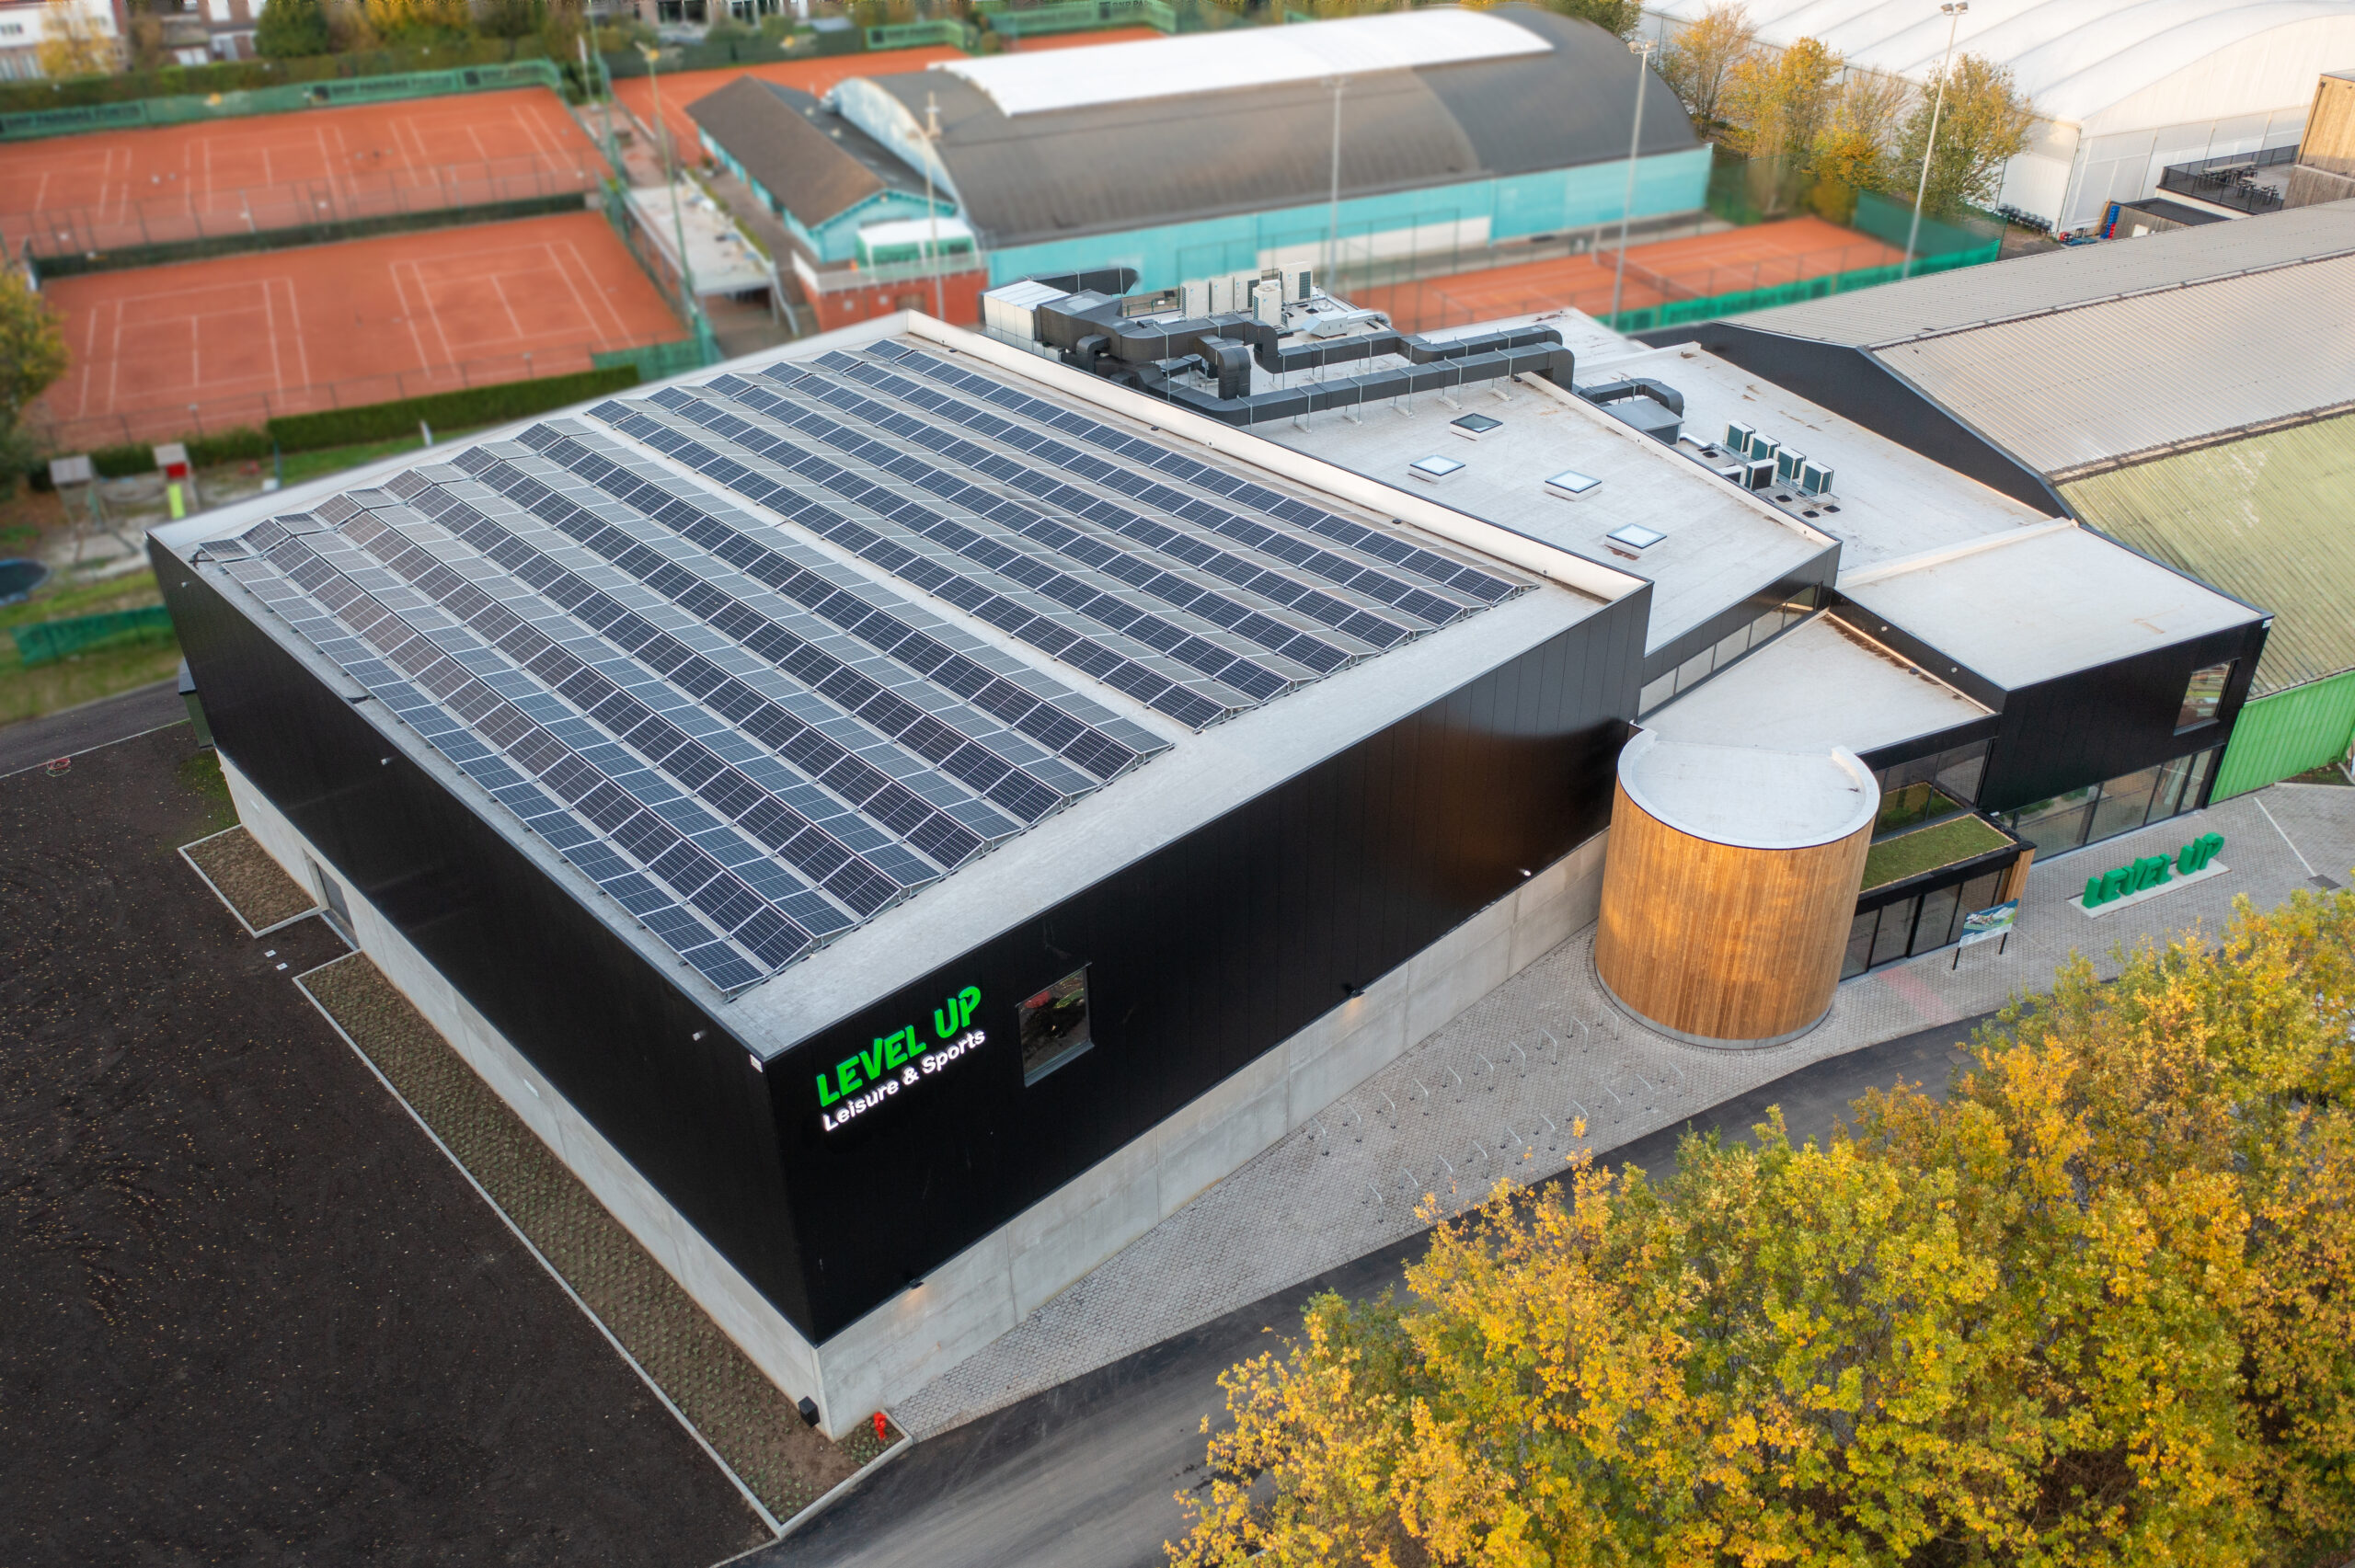 Zonnepaneelsysteem geïnstalleerd door Solar Engineering op het dak van Level Up in Edegem, weerspiegelt de samenwerking tussen duurzame energie en sportieve vooruitgang.